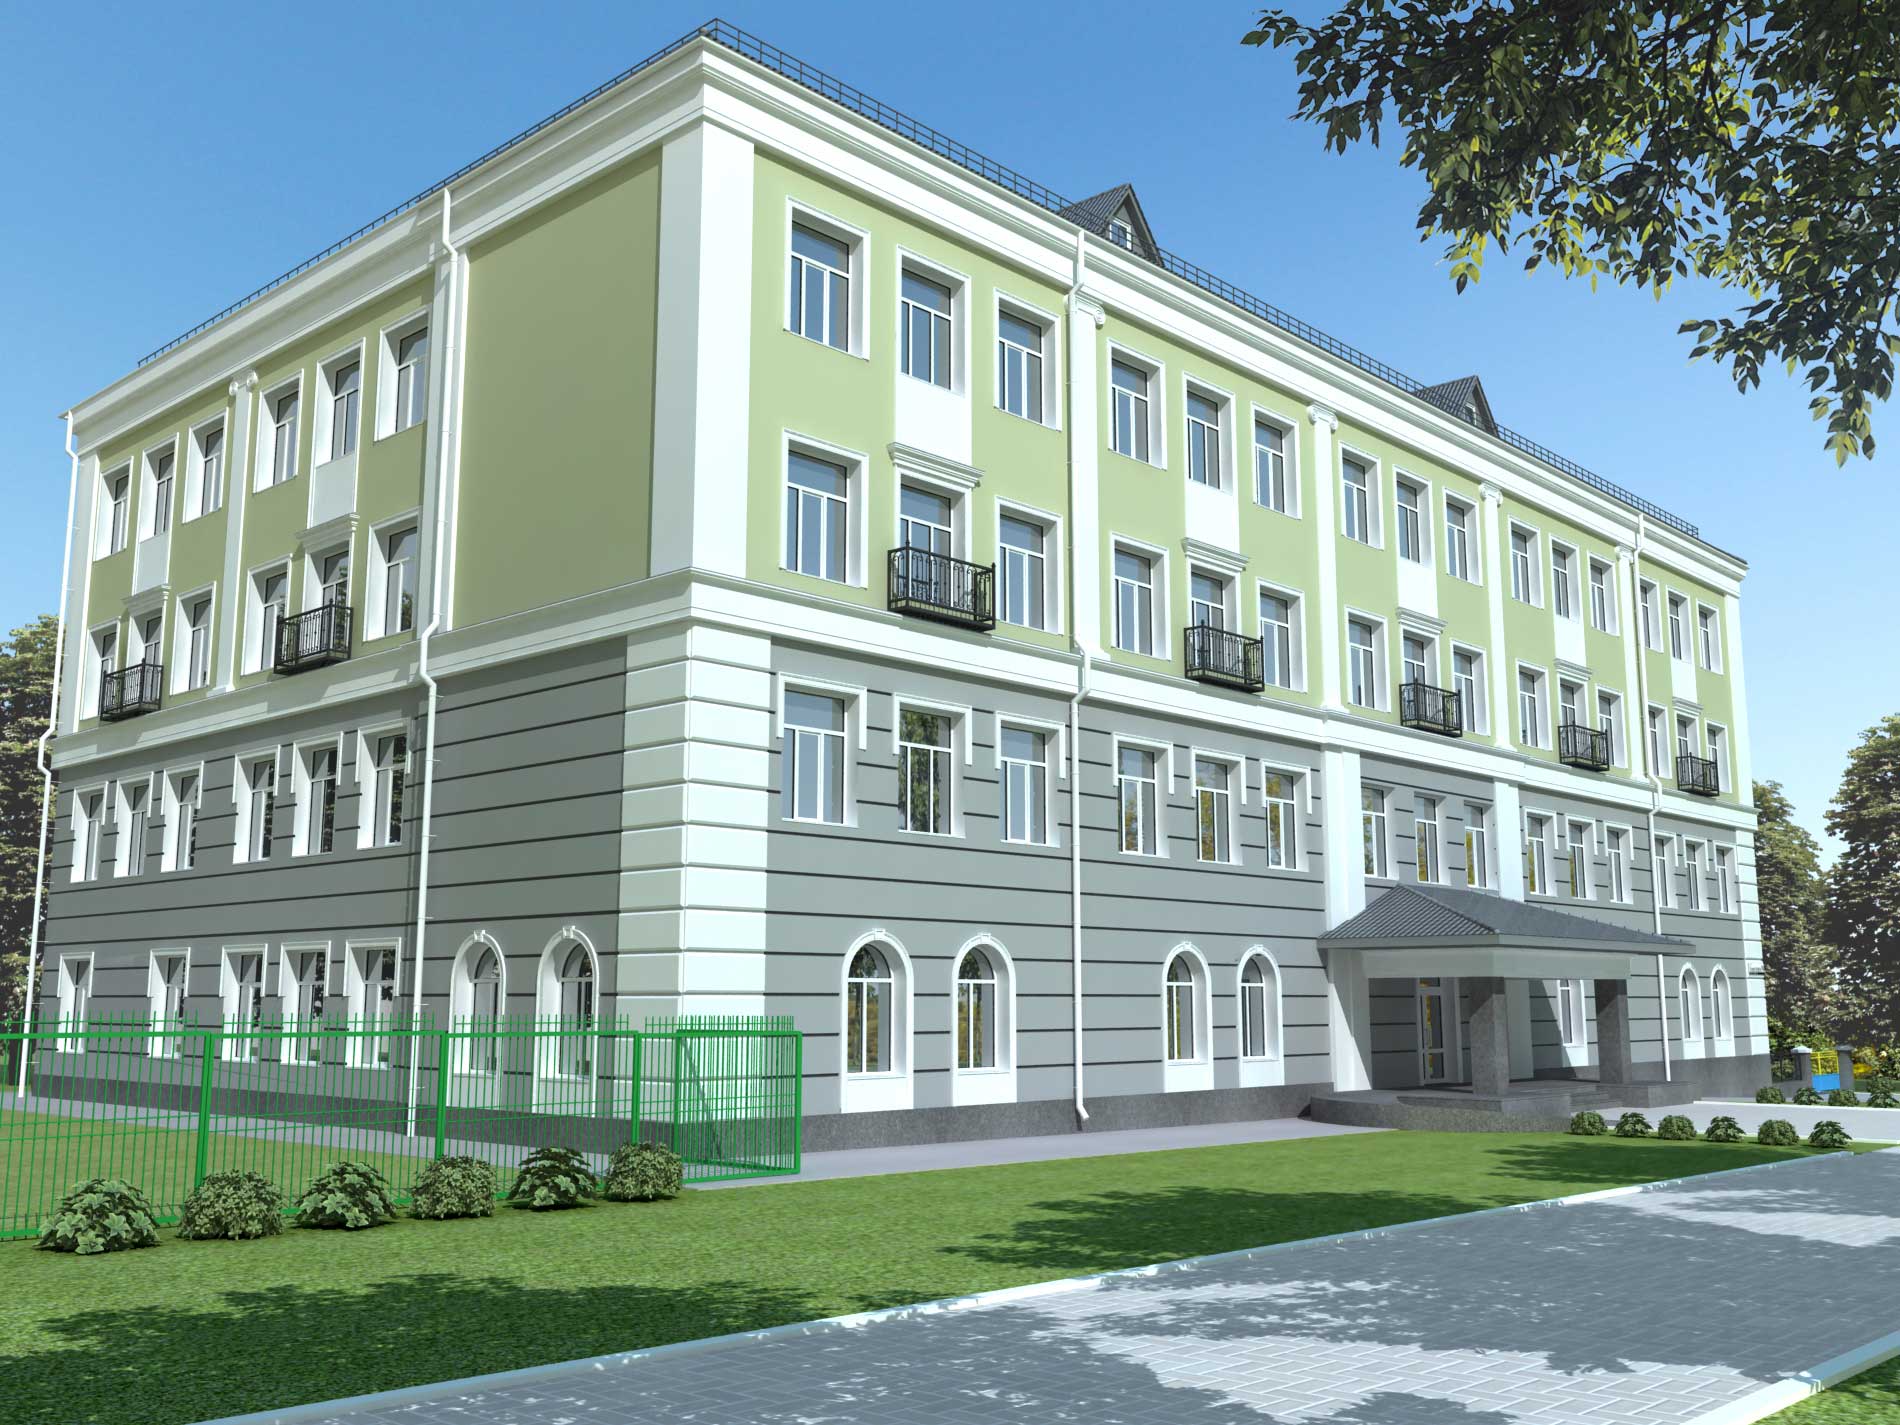 Visualisation des façades de l'école dans 3d max vray 1.5 image